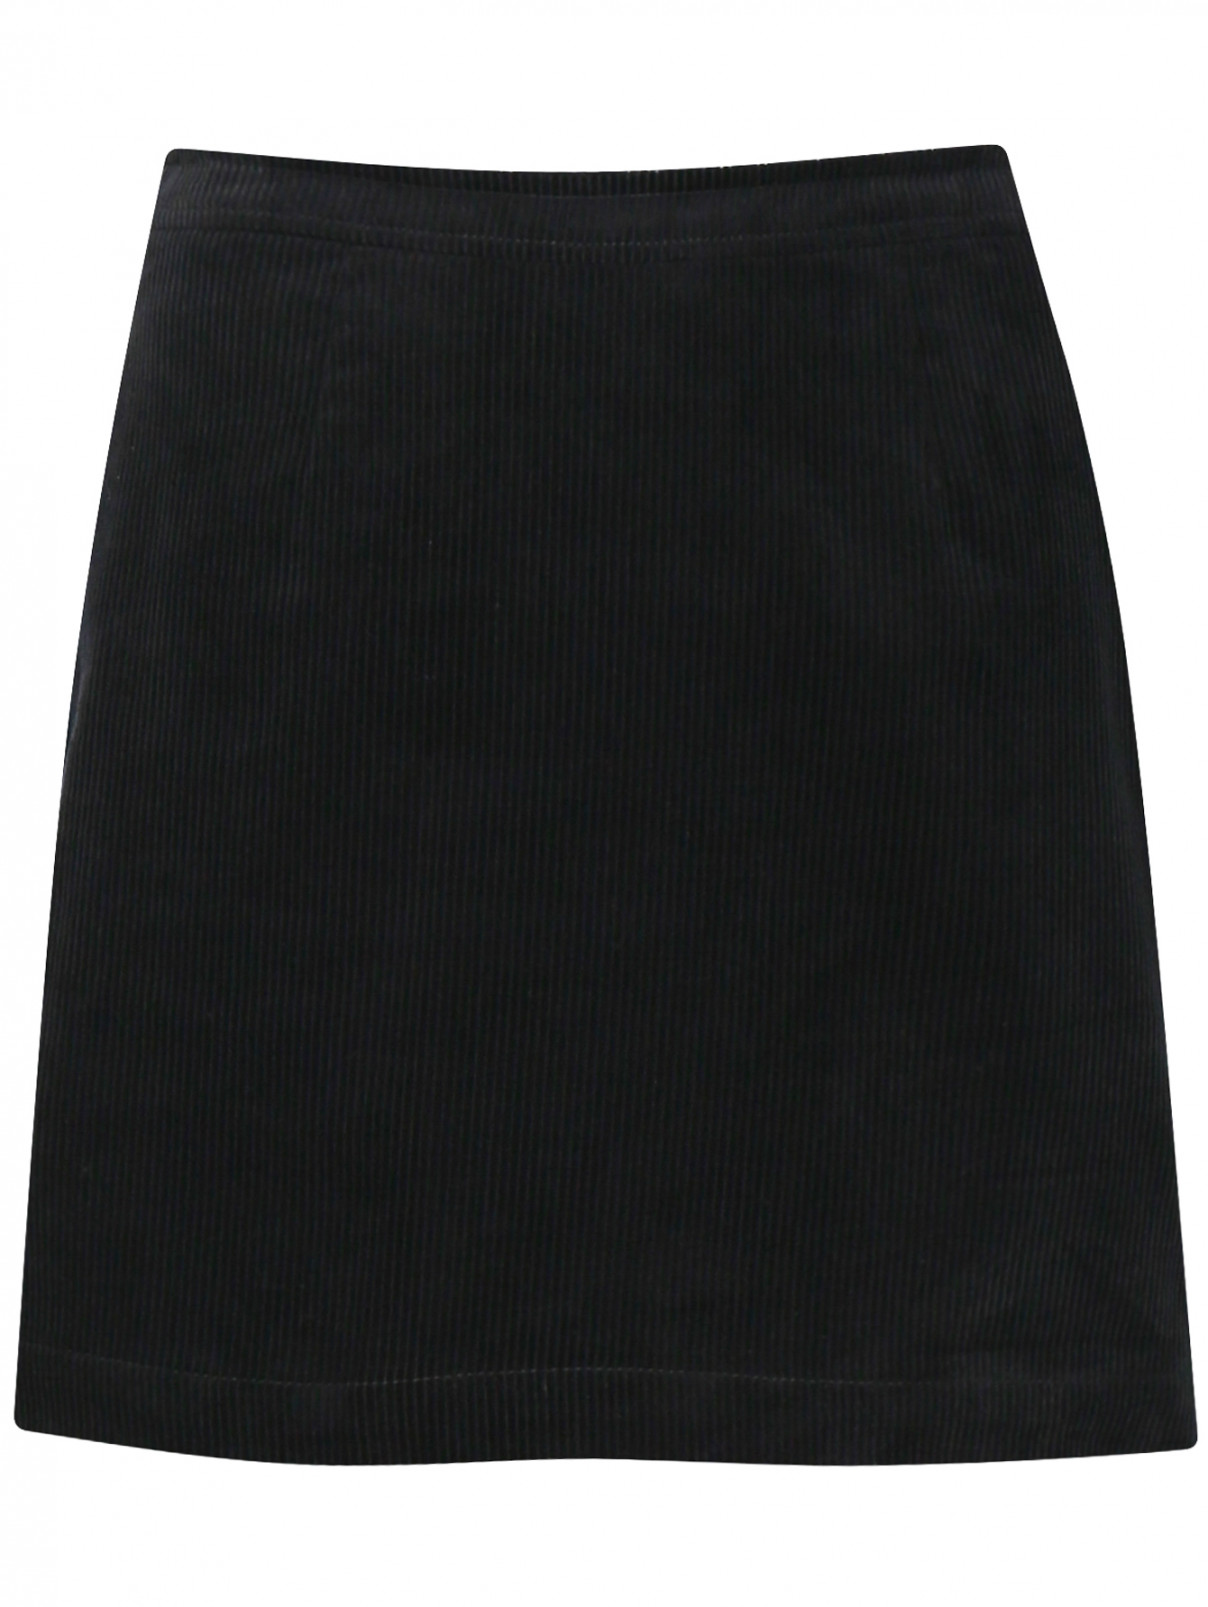 Юбка-мини из вельвета с карманами Calvin Klein  –  Общий вид  – Цвет:  Черный